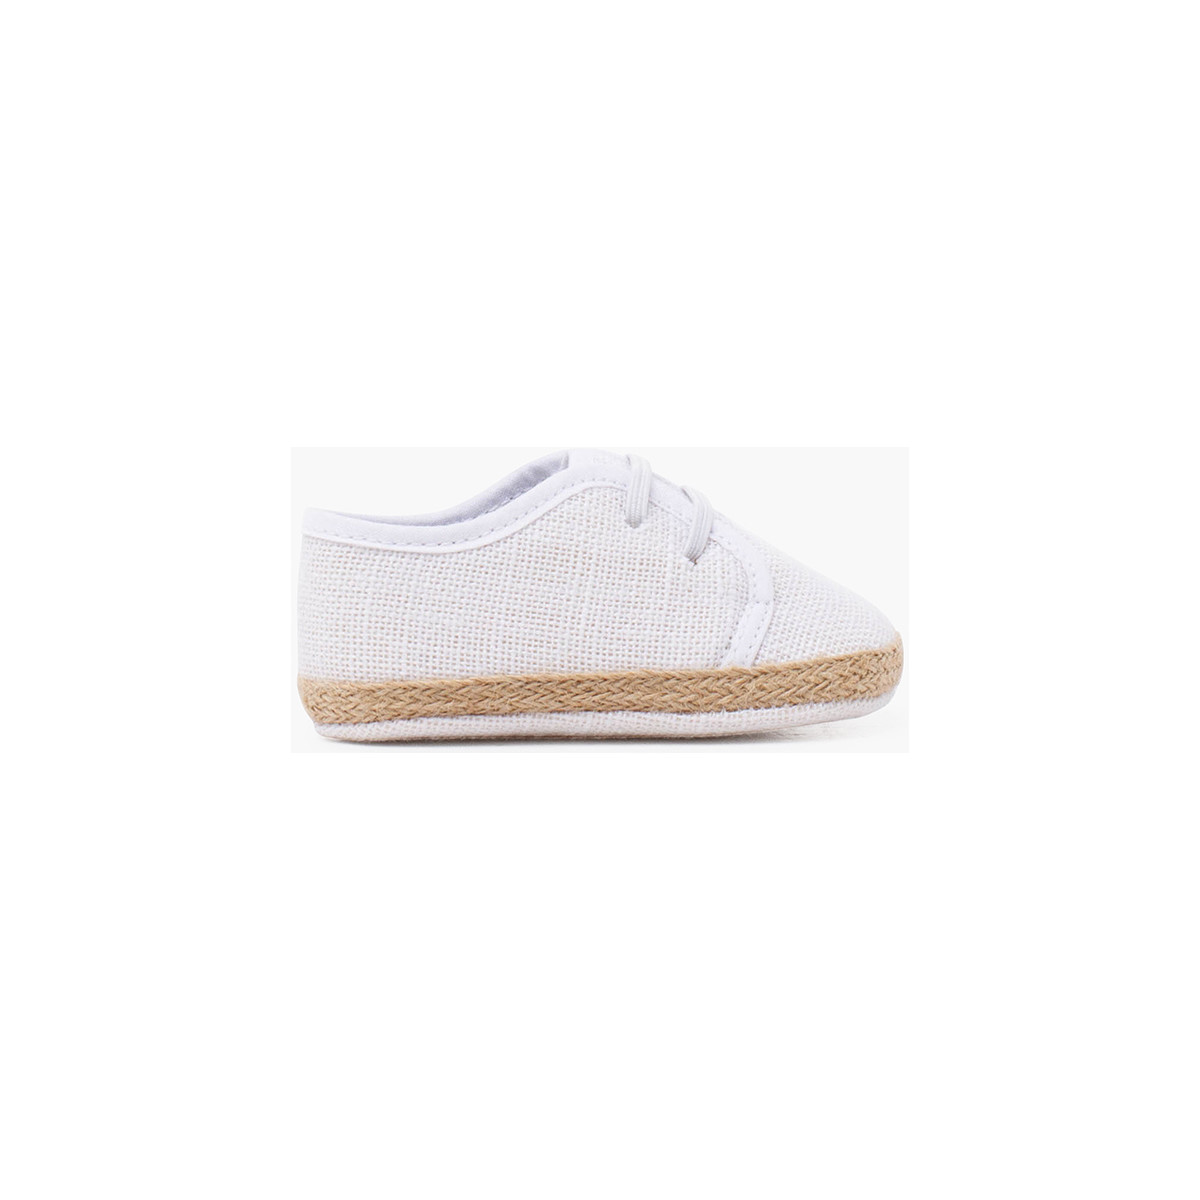 Pisamonas Blanc Chaussures pour bébé en lin et jute avec lacets élastiques 94w2rlq0